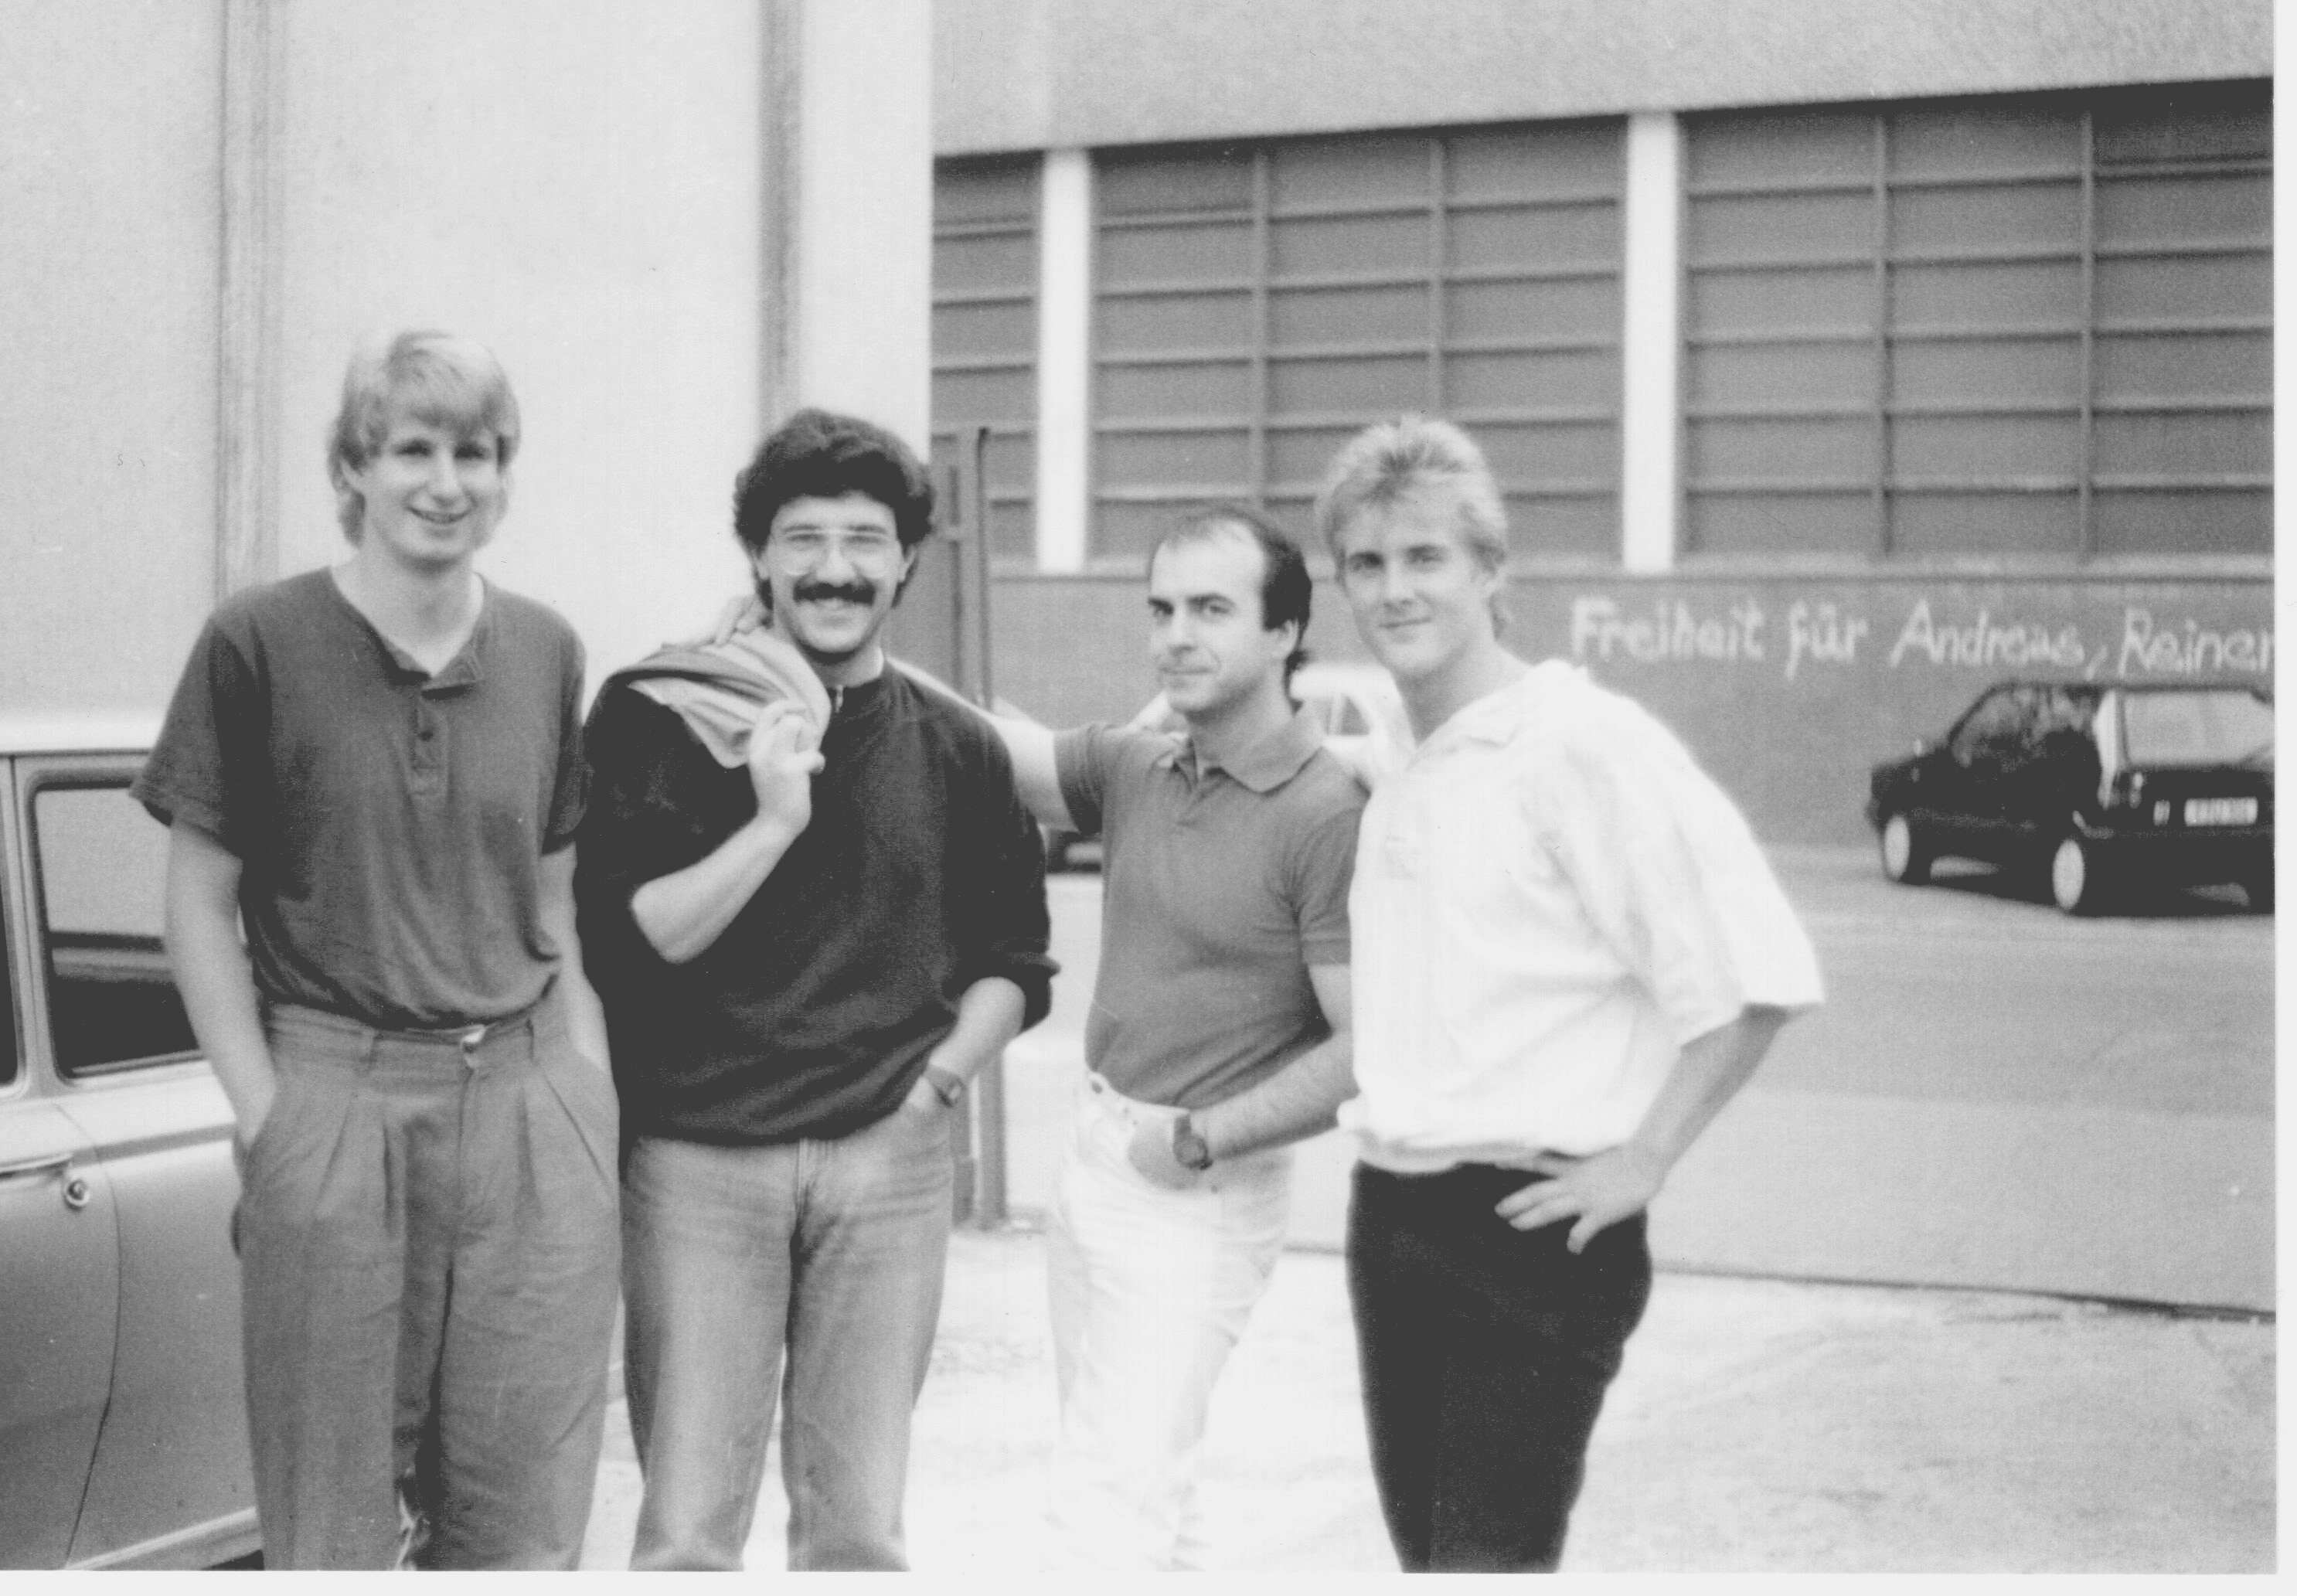 Akimbo - Frankfurt a.m.1988 - con Ralf Cetto, Alejandro Sanguinetti e Rick Keller